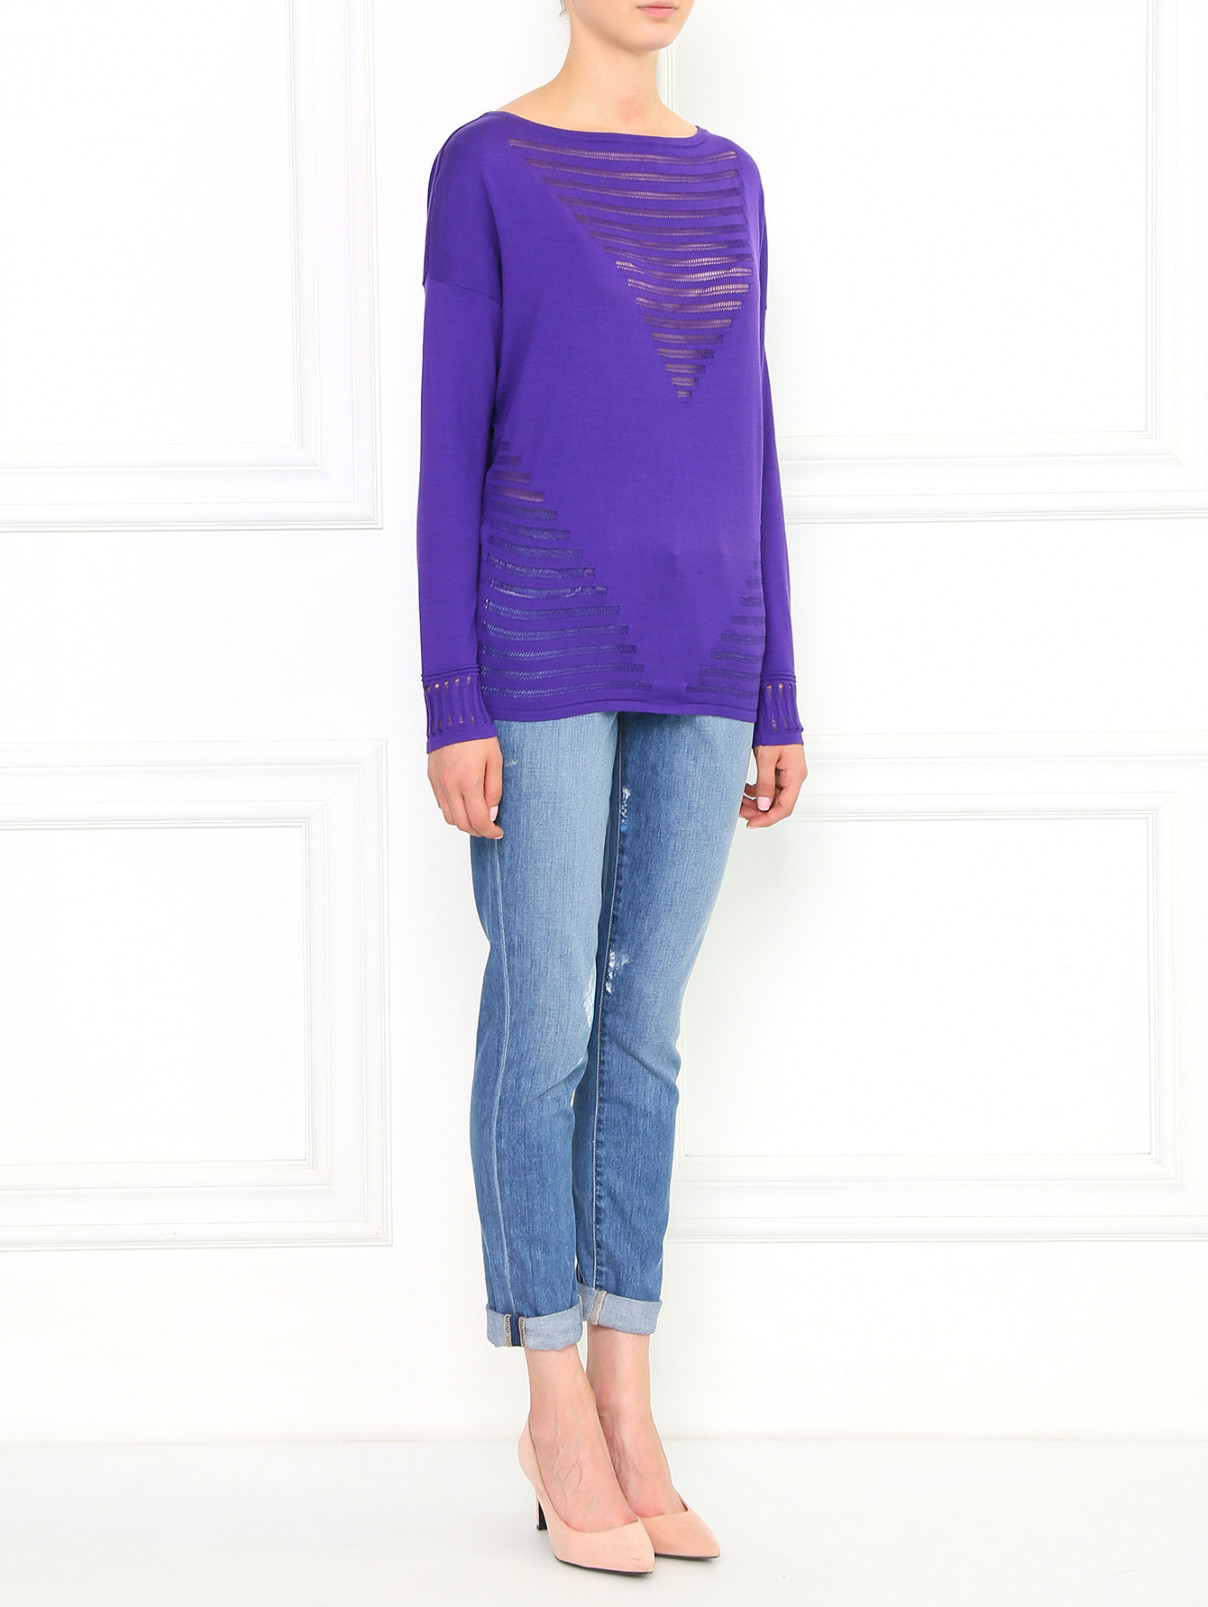 Джемпер из шелка и хлопка Versace 1969  –  Модель Общий вид  – Цвет:  Фиолетовый